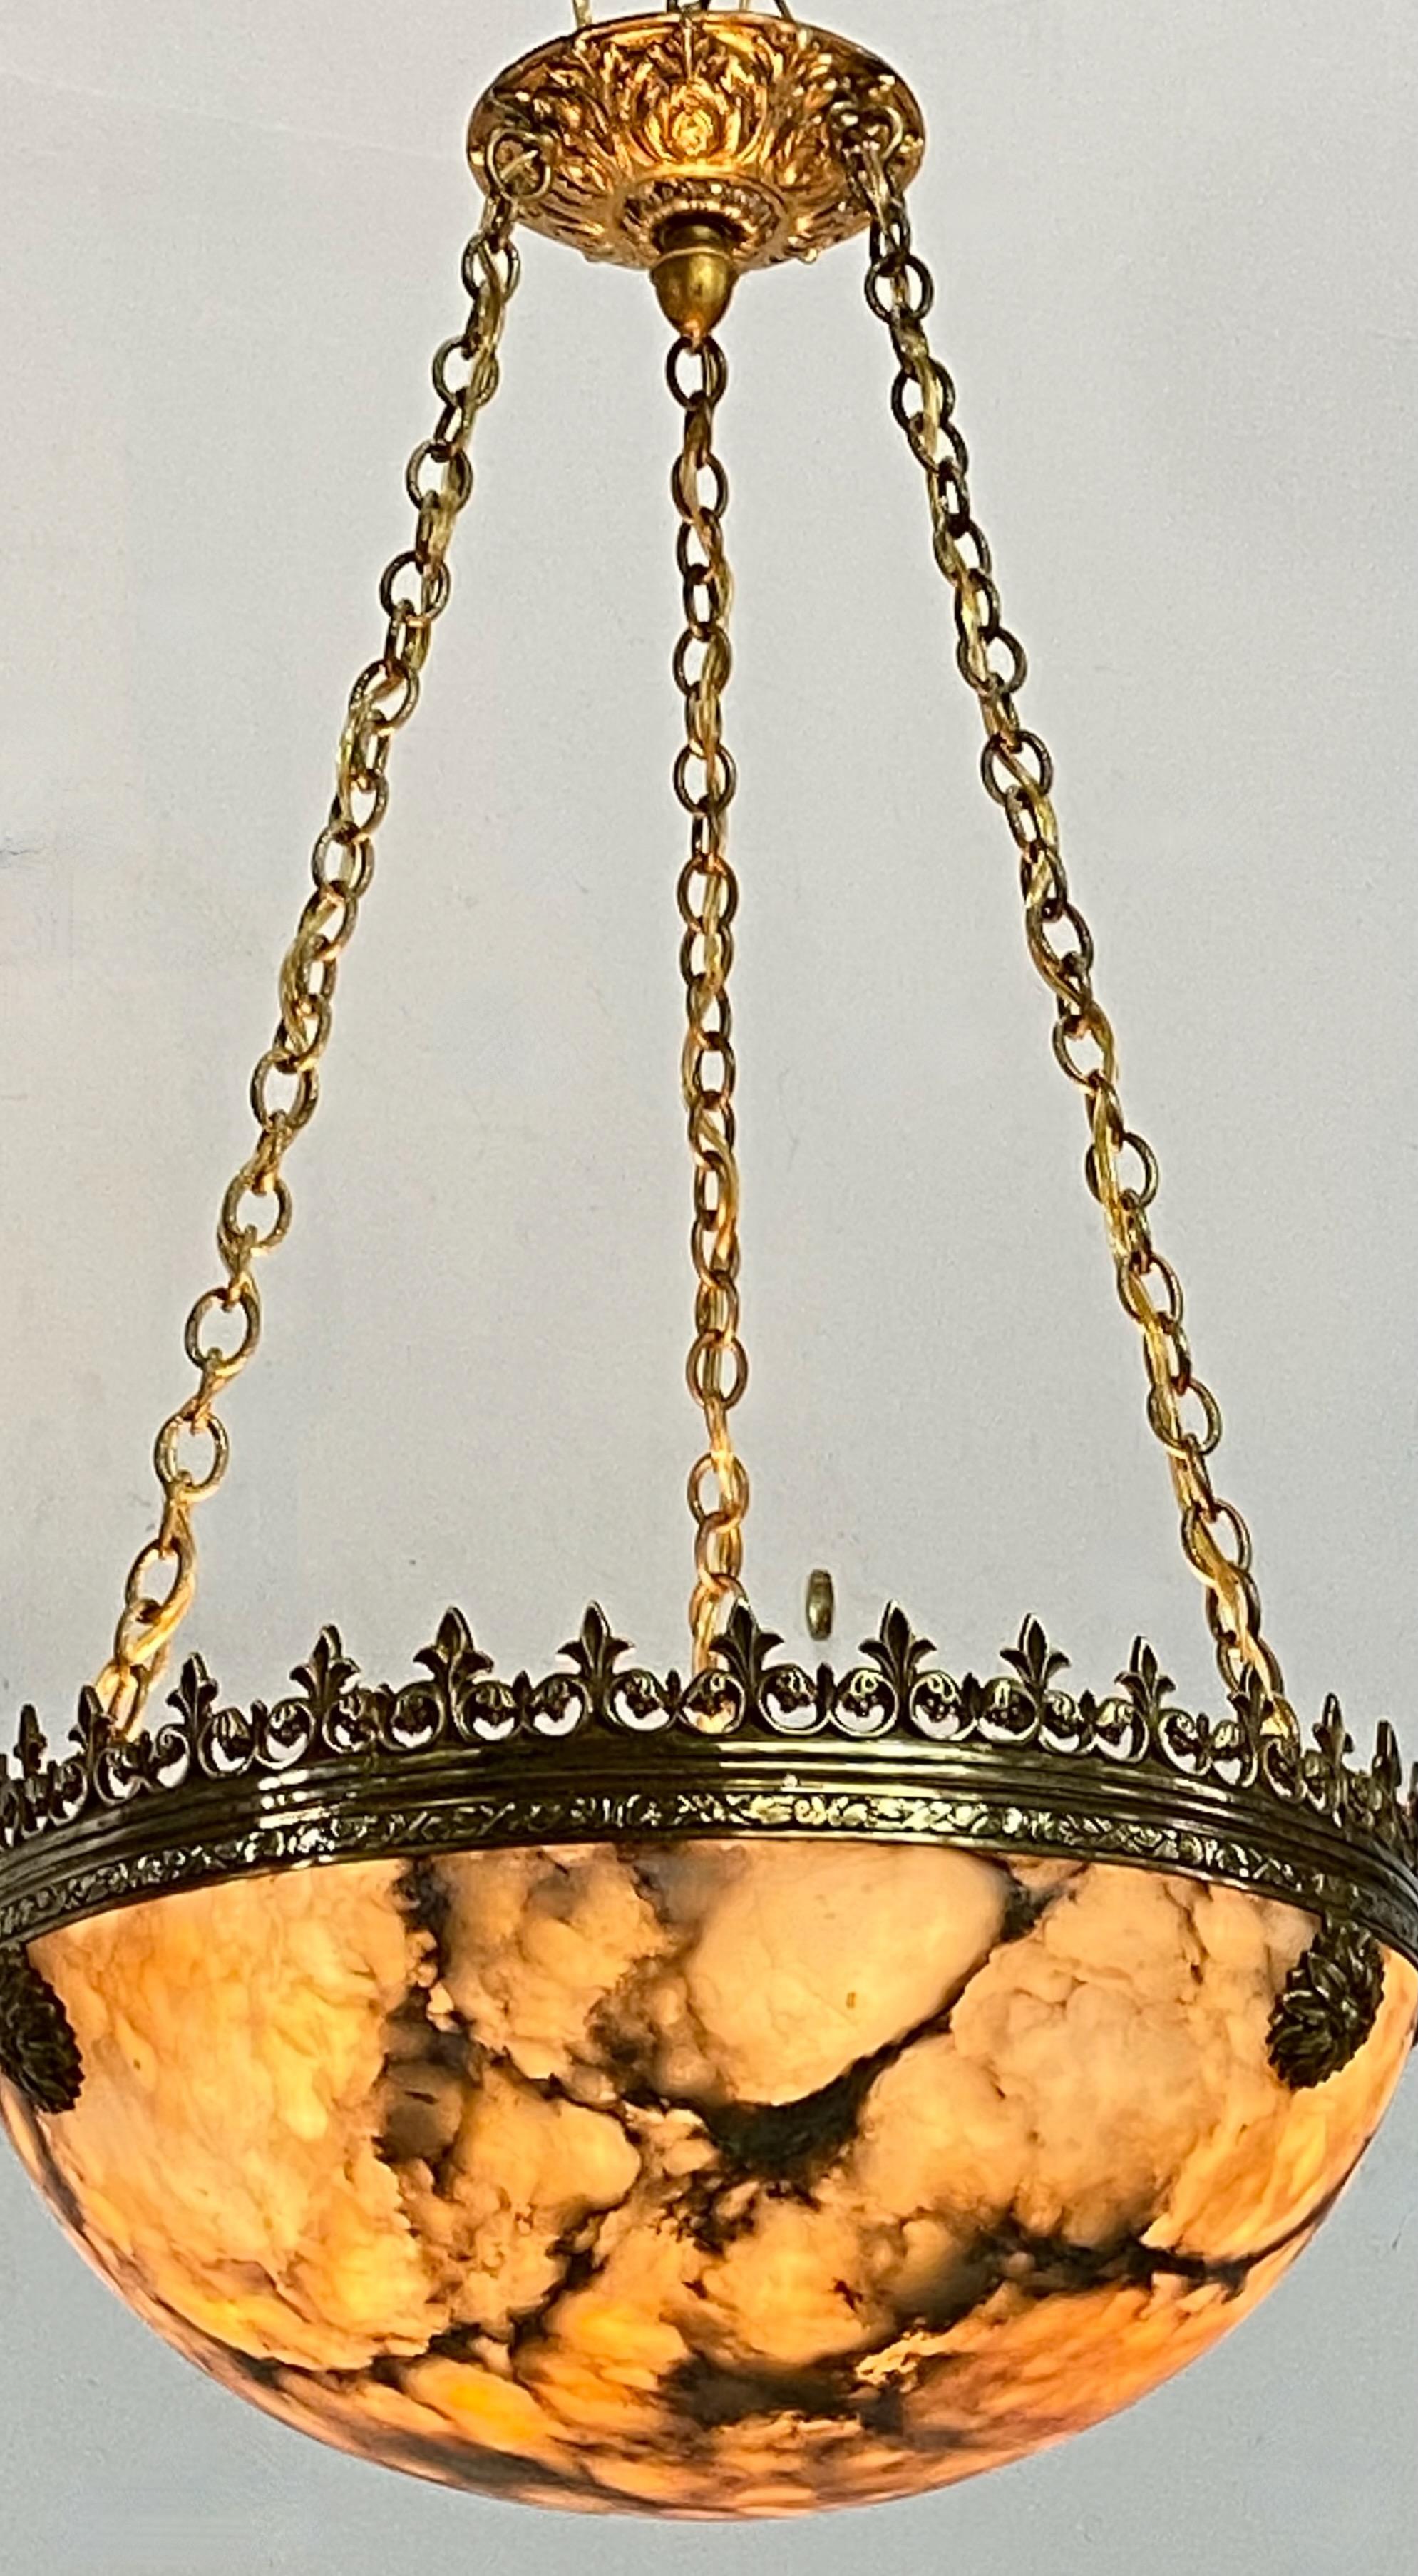 Un exceptionnel luminaire en albâtre avec une quincaillerie originale en laiton.
Restauré et recâblé, prêt à être installé.
Début du 20e siècle, vers 1910.